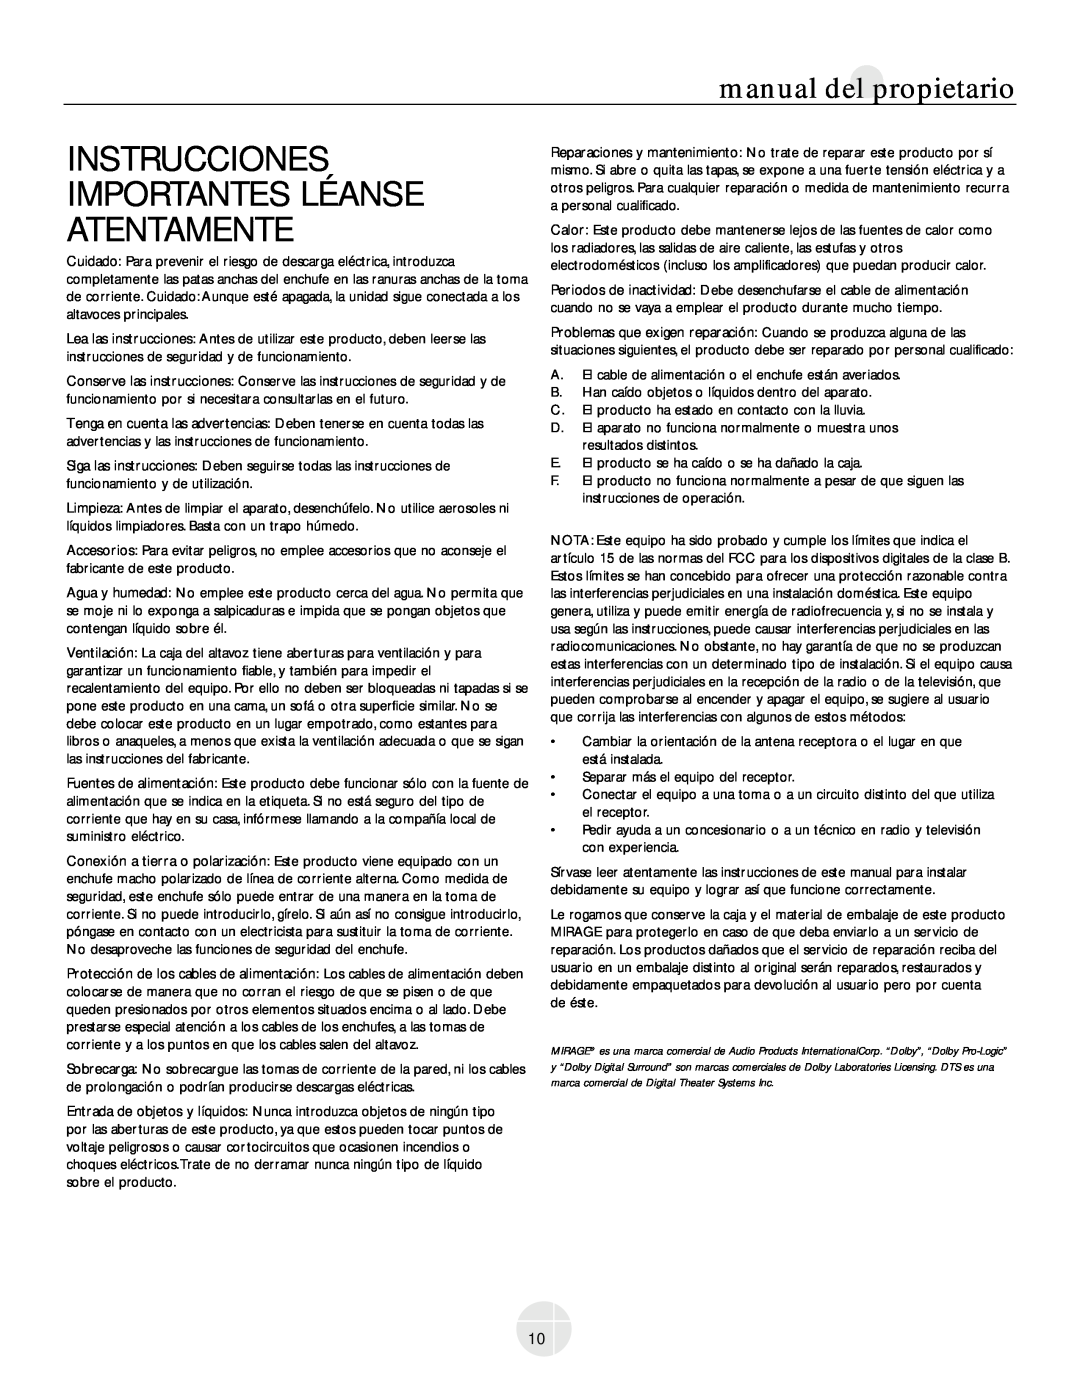 Mirage Loudspeakers OM-200 owner manual Instrucciones Importantes Léanse Atentamente, manual del propietario 